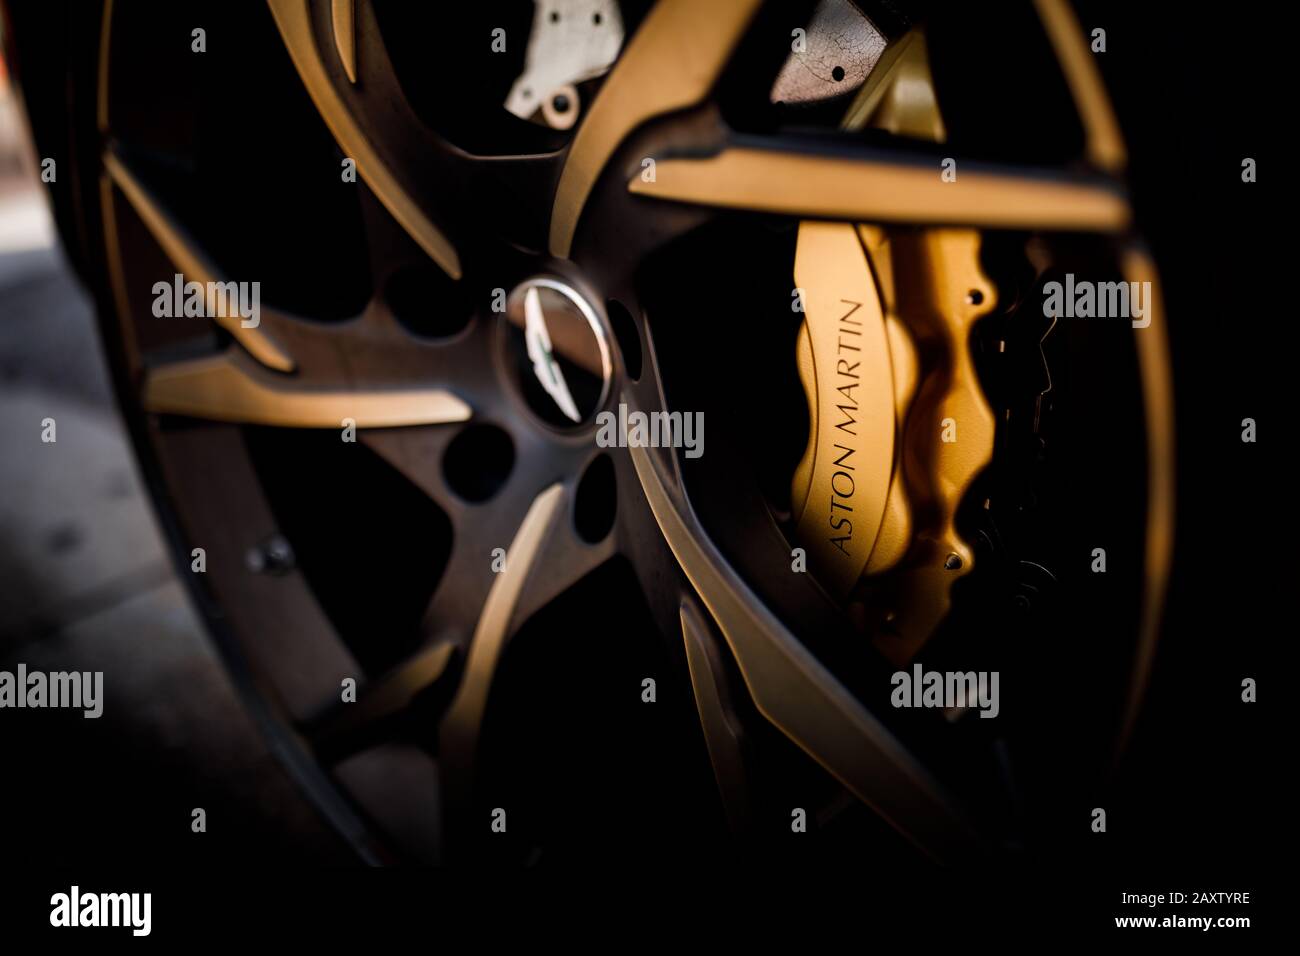 Golden brakes on Aston Martin DB11 Superleggera Stock Photo